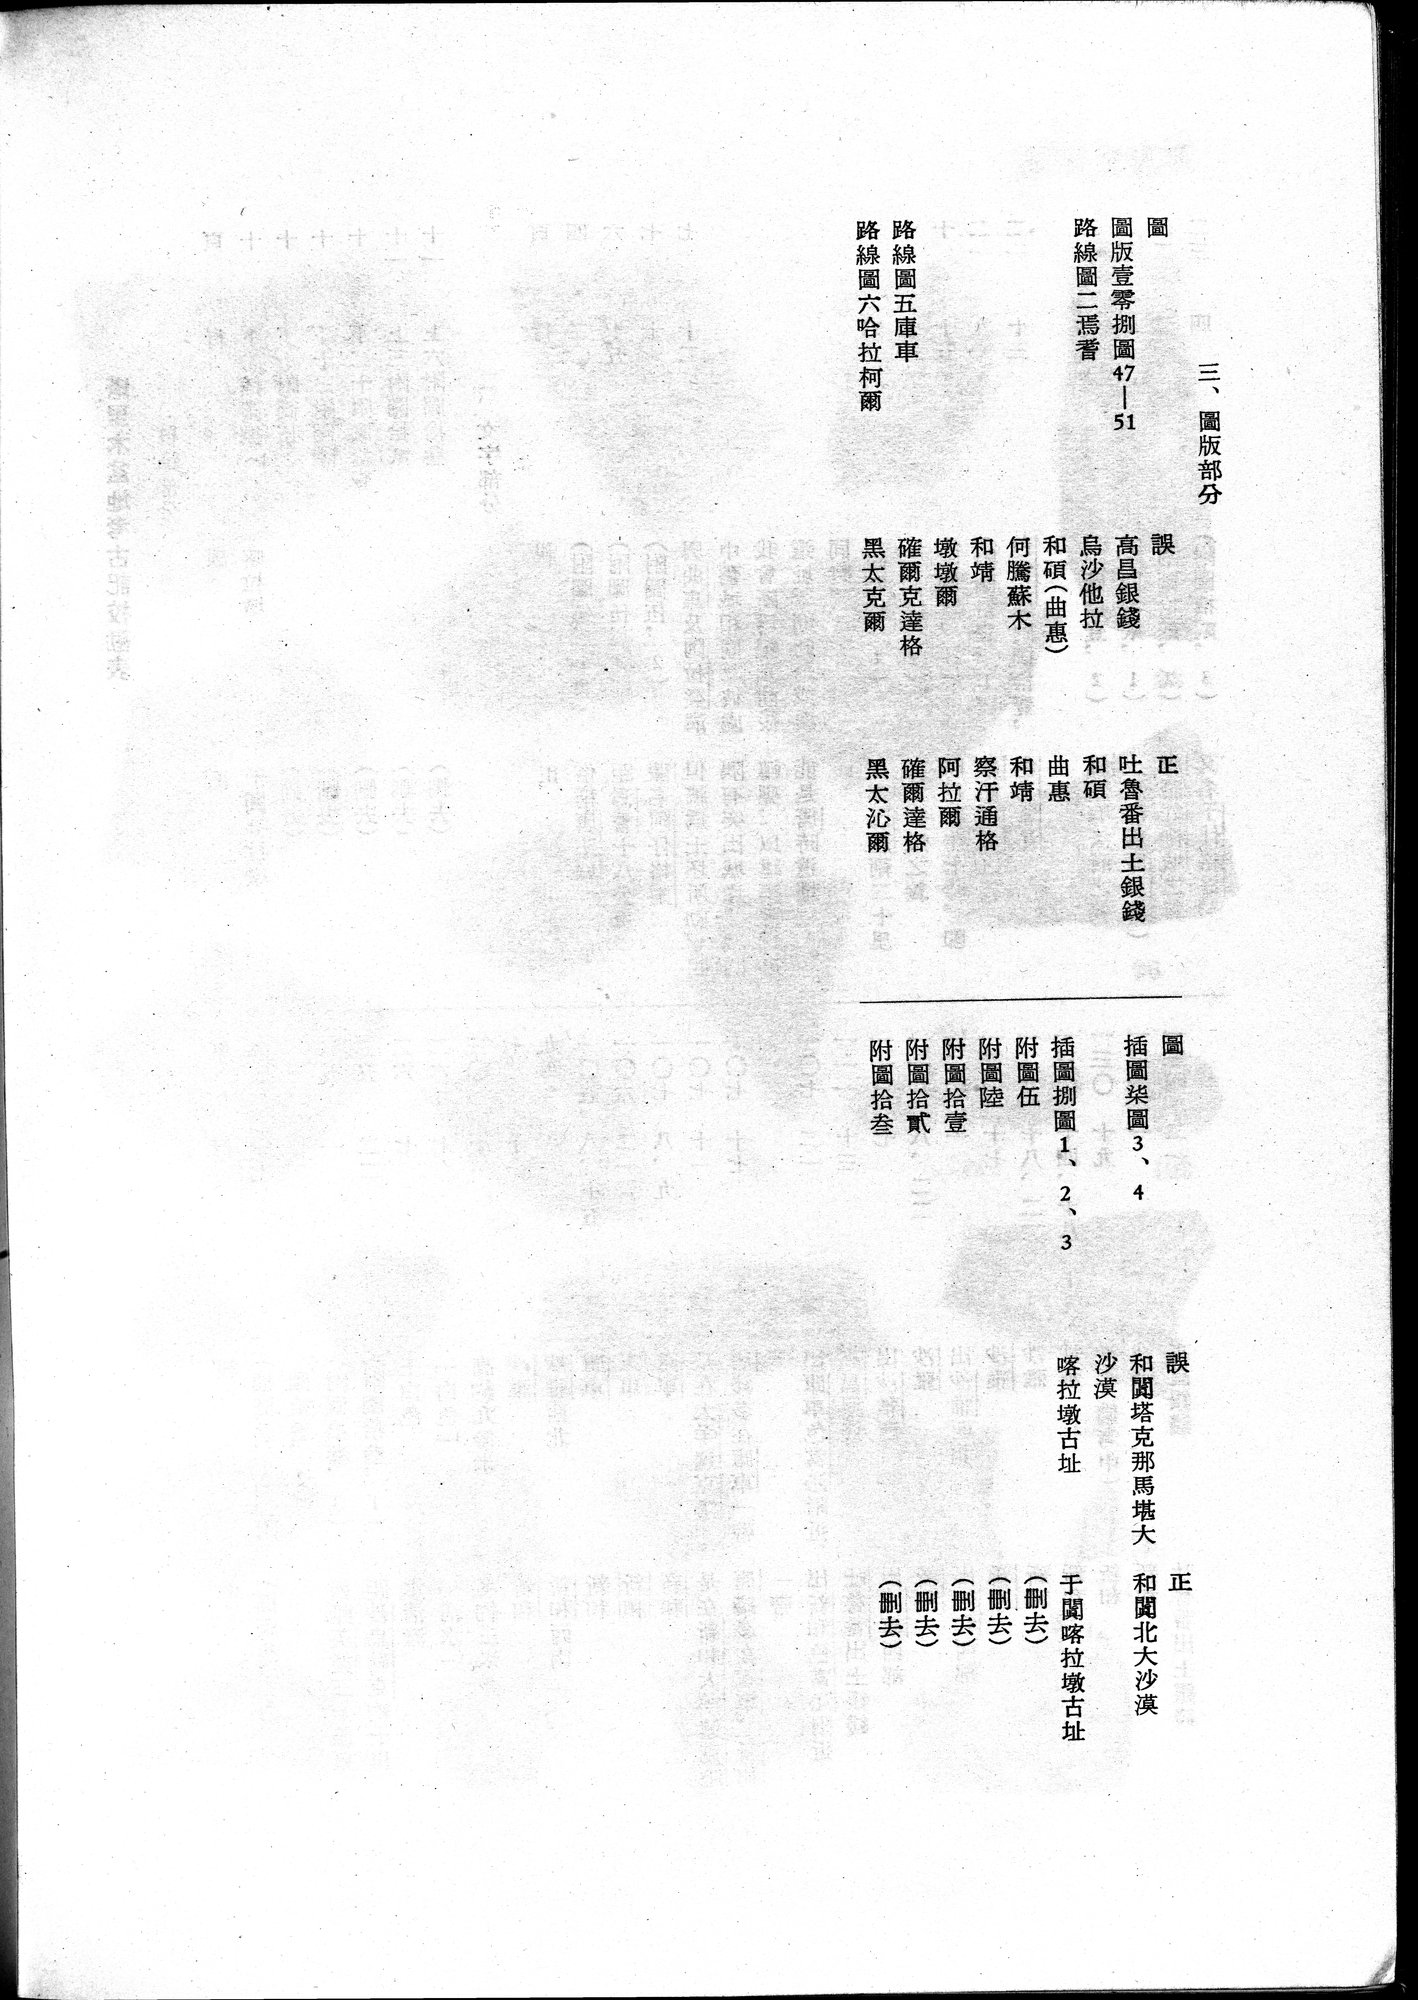 塔里木盆地考古記 : vol.1 / 366 ページ（白黒高解像度画像）